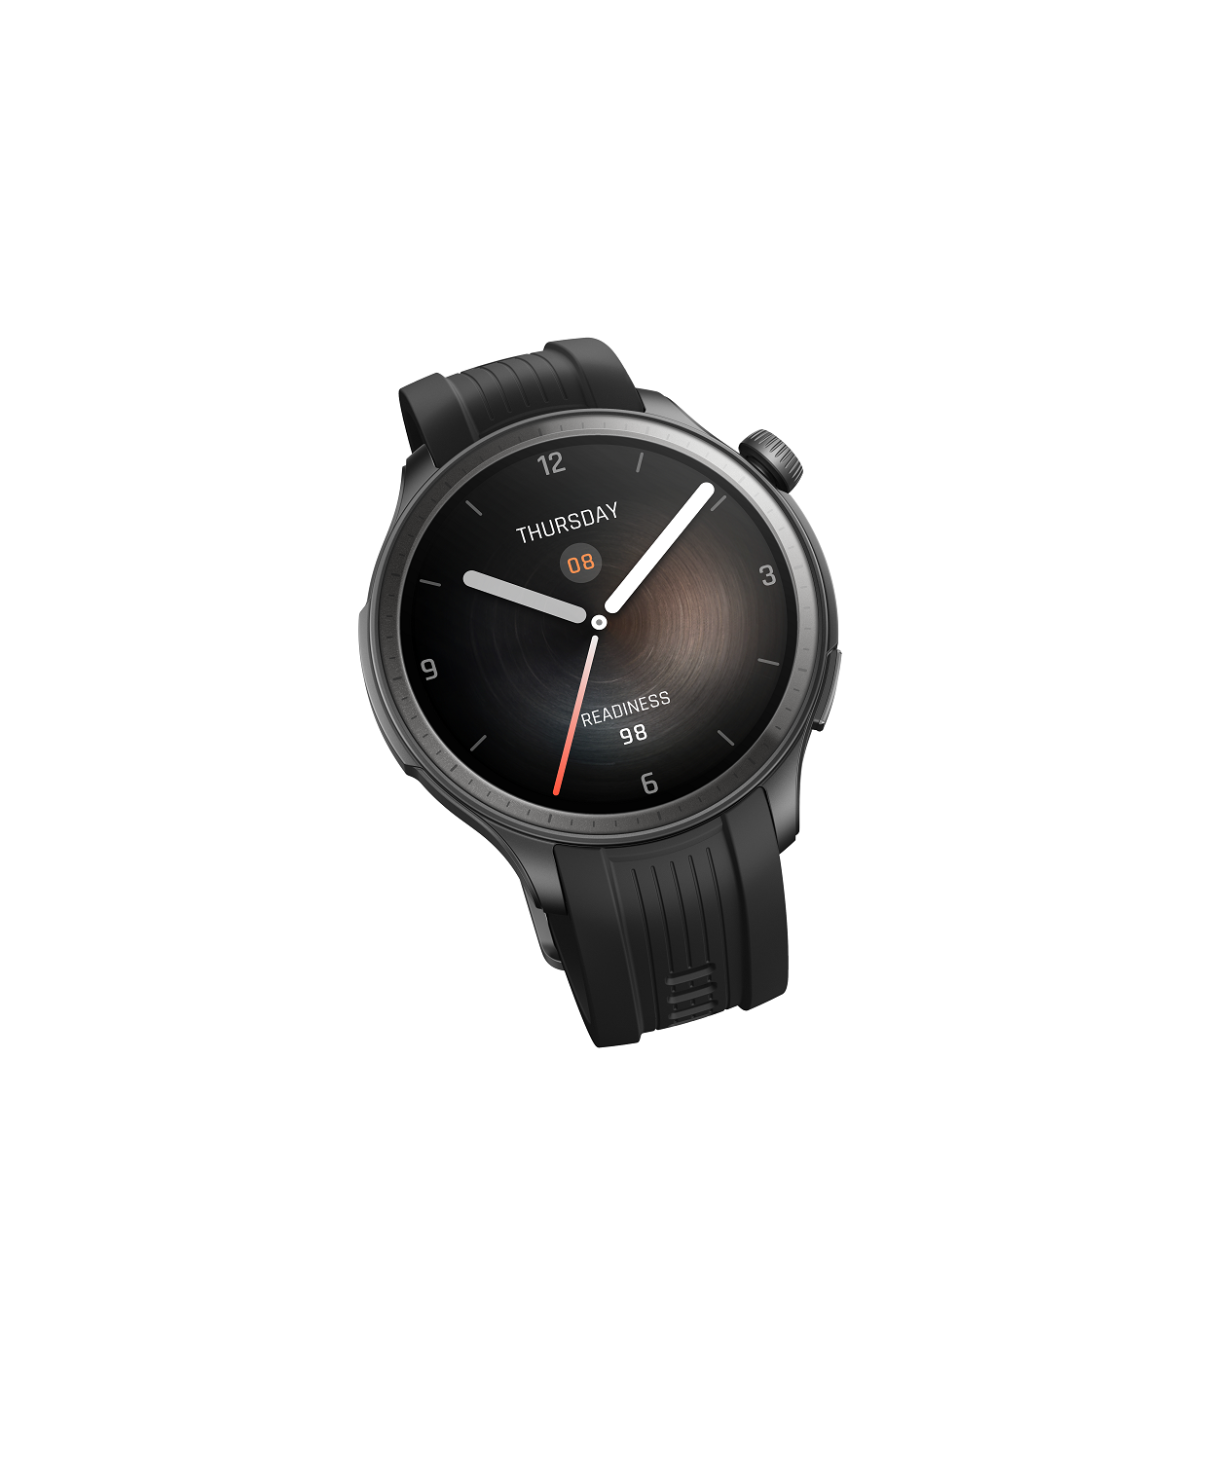 Bộ đôi đồng hồ Amazfit Active và Amazfit Balance, vẻ thời trang-tính công nghệ - Copy of Monaco 特殊 01 011